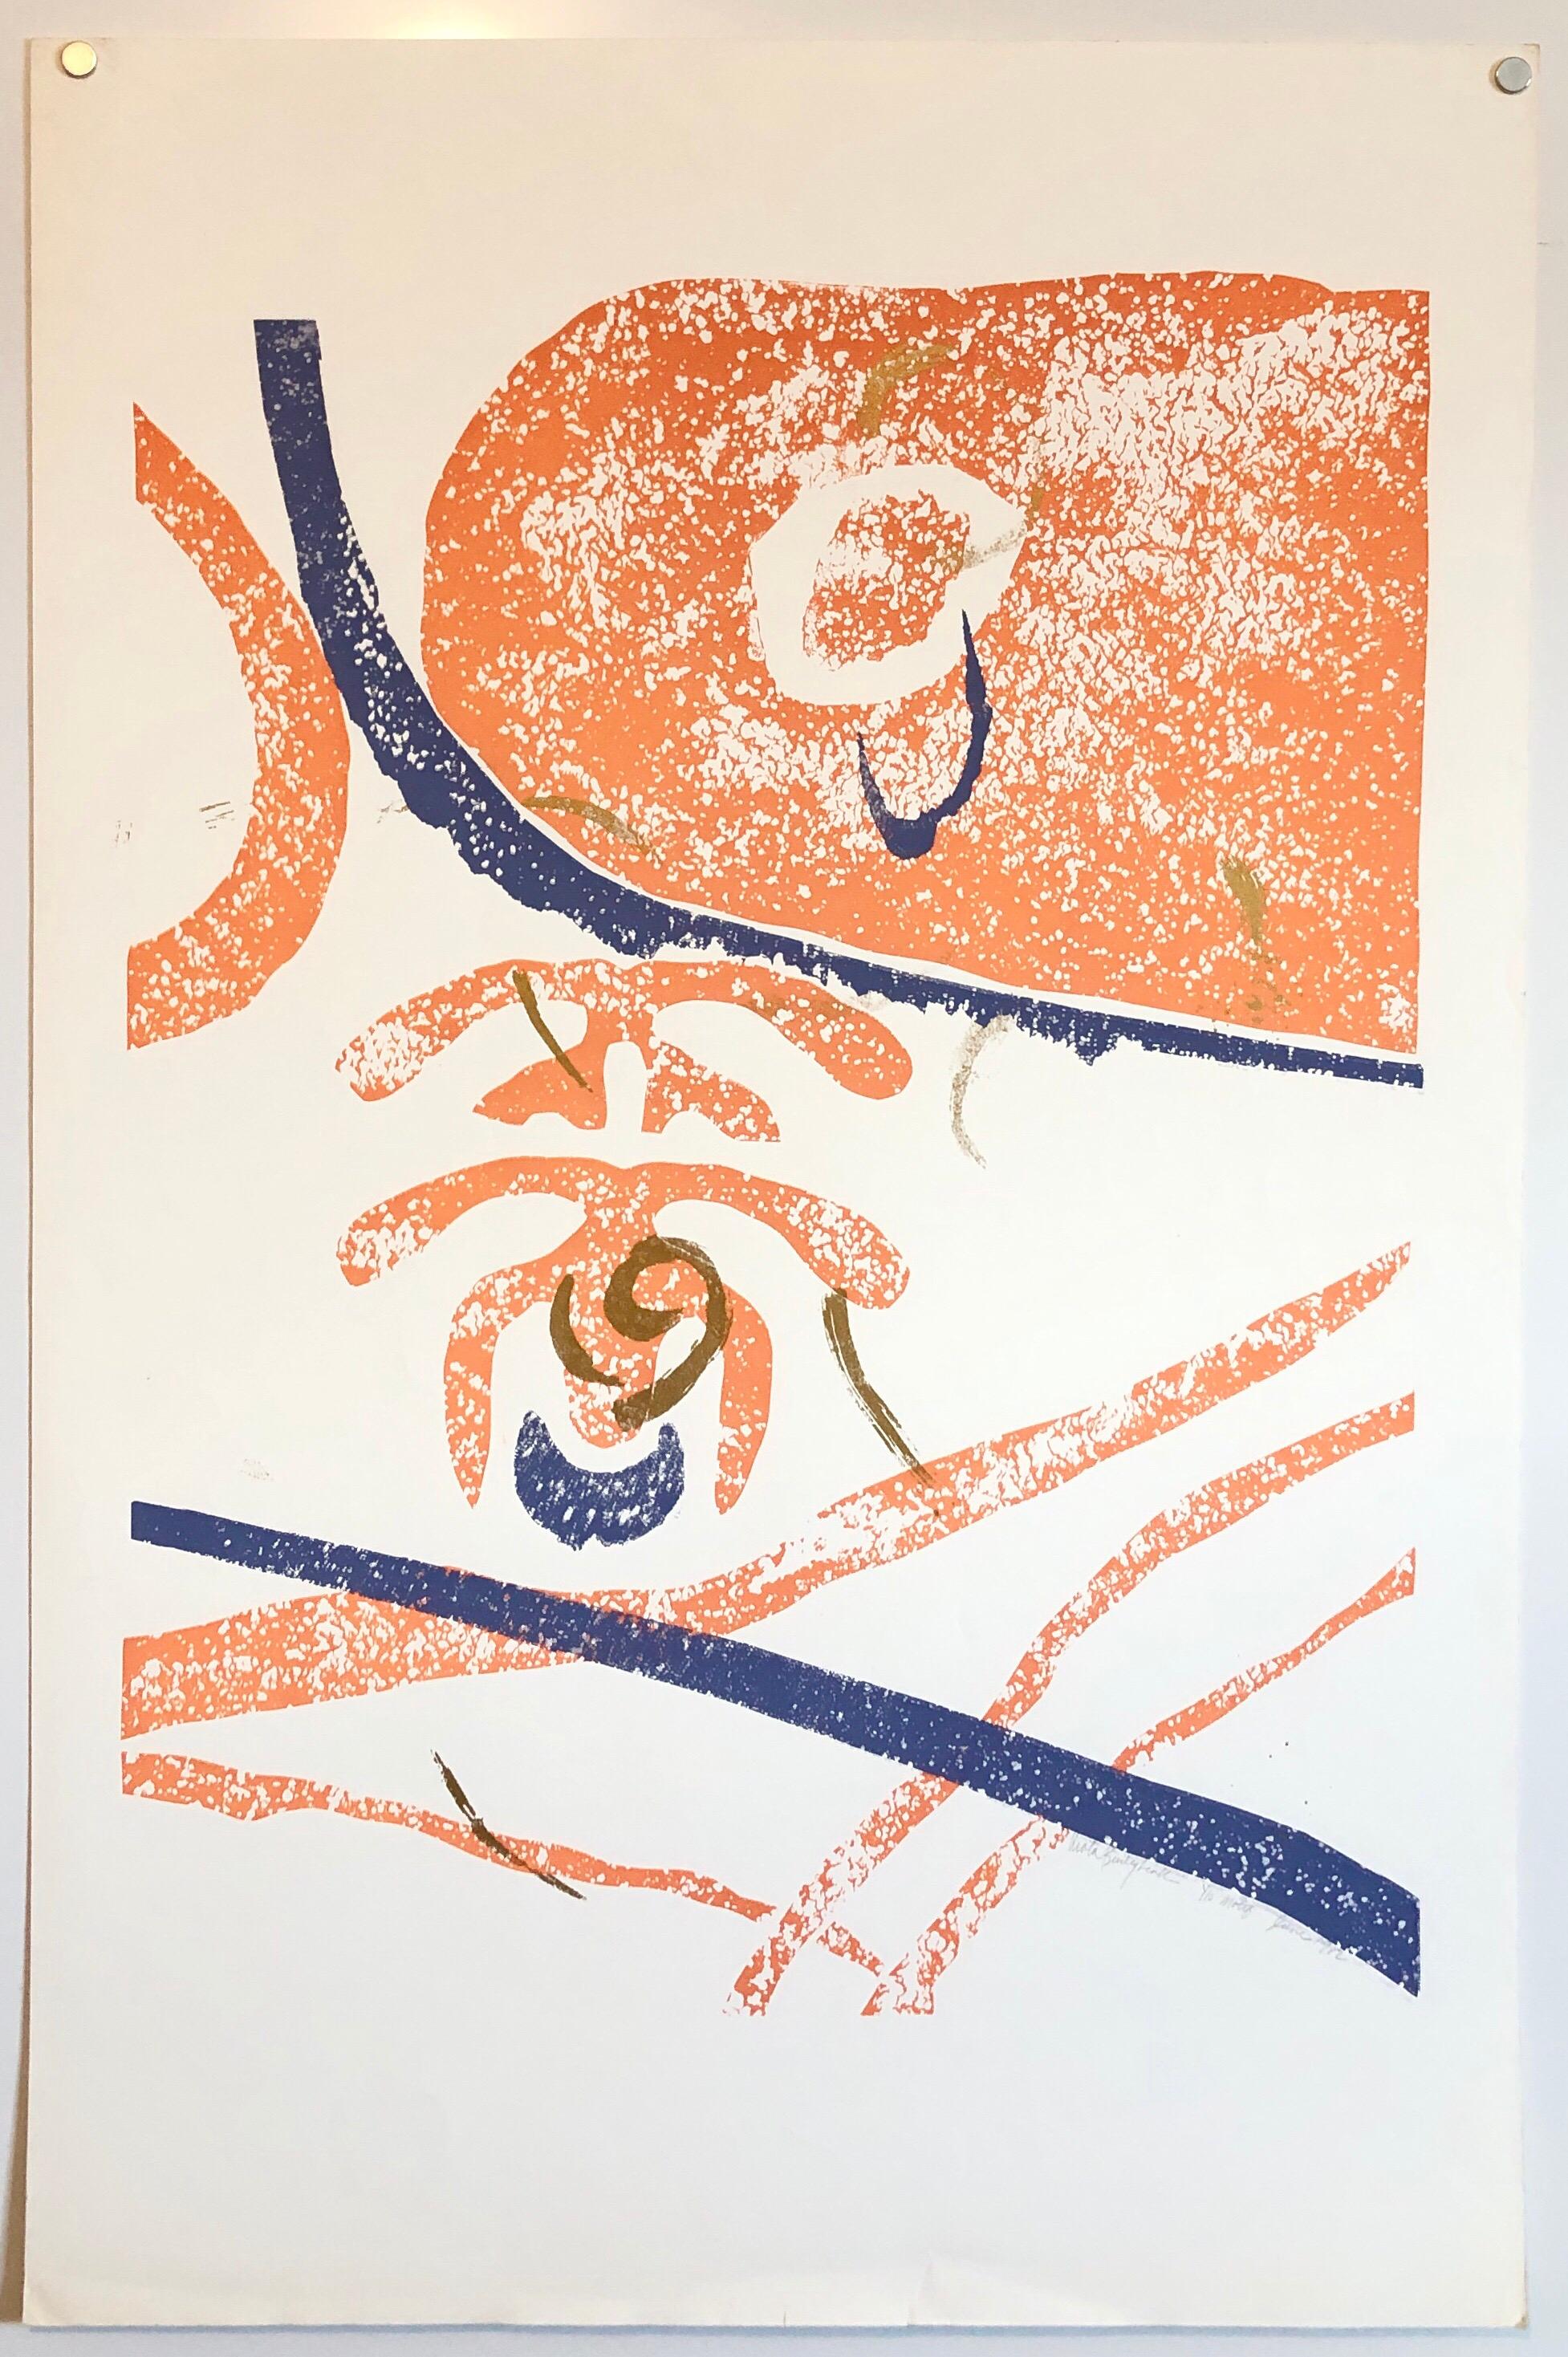 Motiv (Abstrakt) in Orange, Blau und Gold abstrakt.
Aus der kleinen Auflage von 10. von 1982. Ich bin mir nicht sicher, ob es sich um einen Holzschnitt oder Holzschnitt oder einen Siebdruck oder eine Kombination davon handelt. 

Viola Burley Leak,